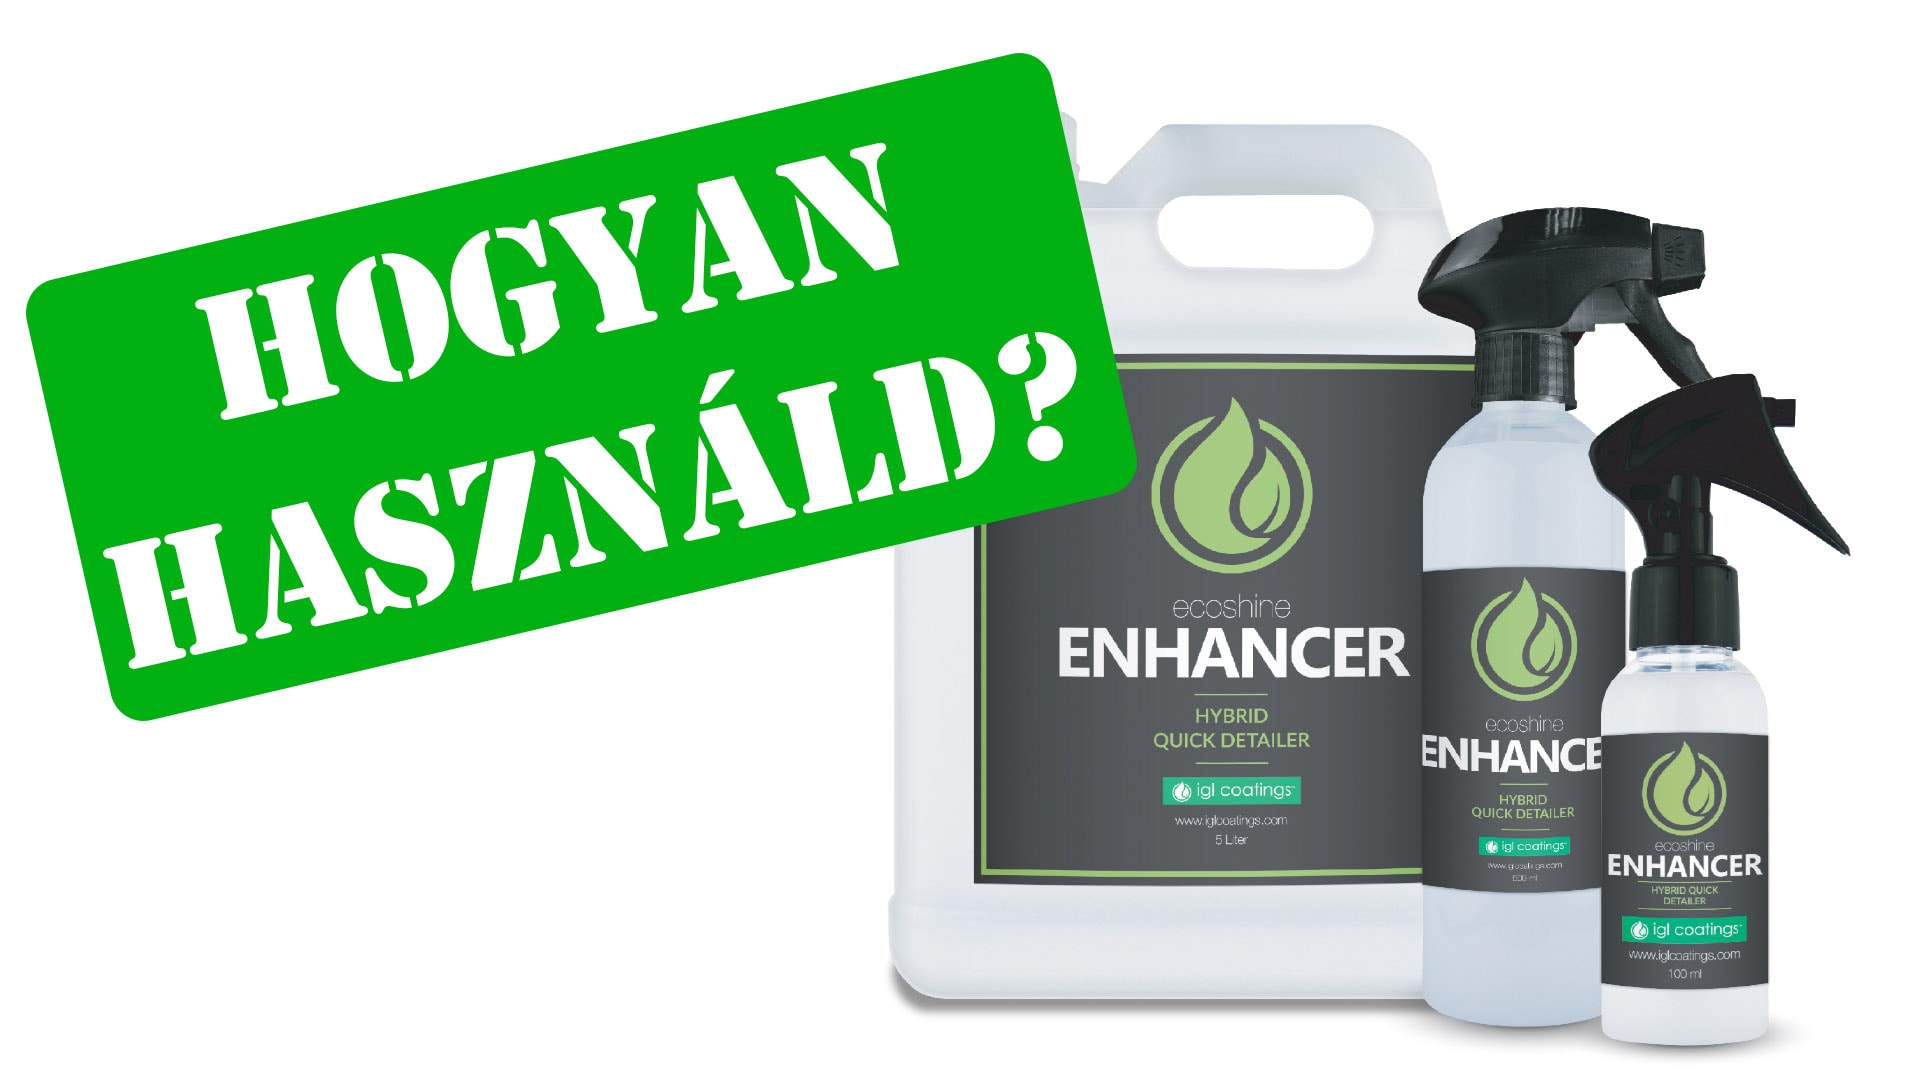 IGL Ecoshine Enhancer 500ml | Ceramic Hybrid Quick Detailer Spray